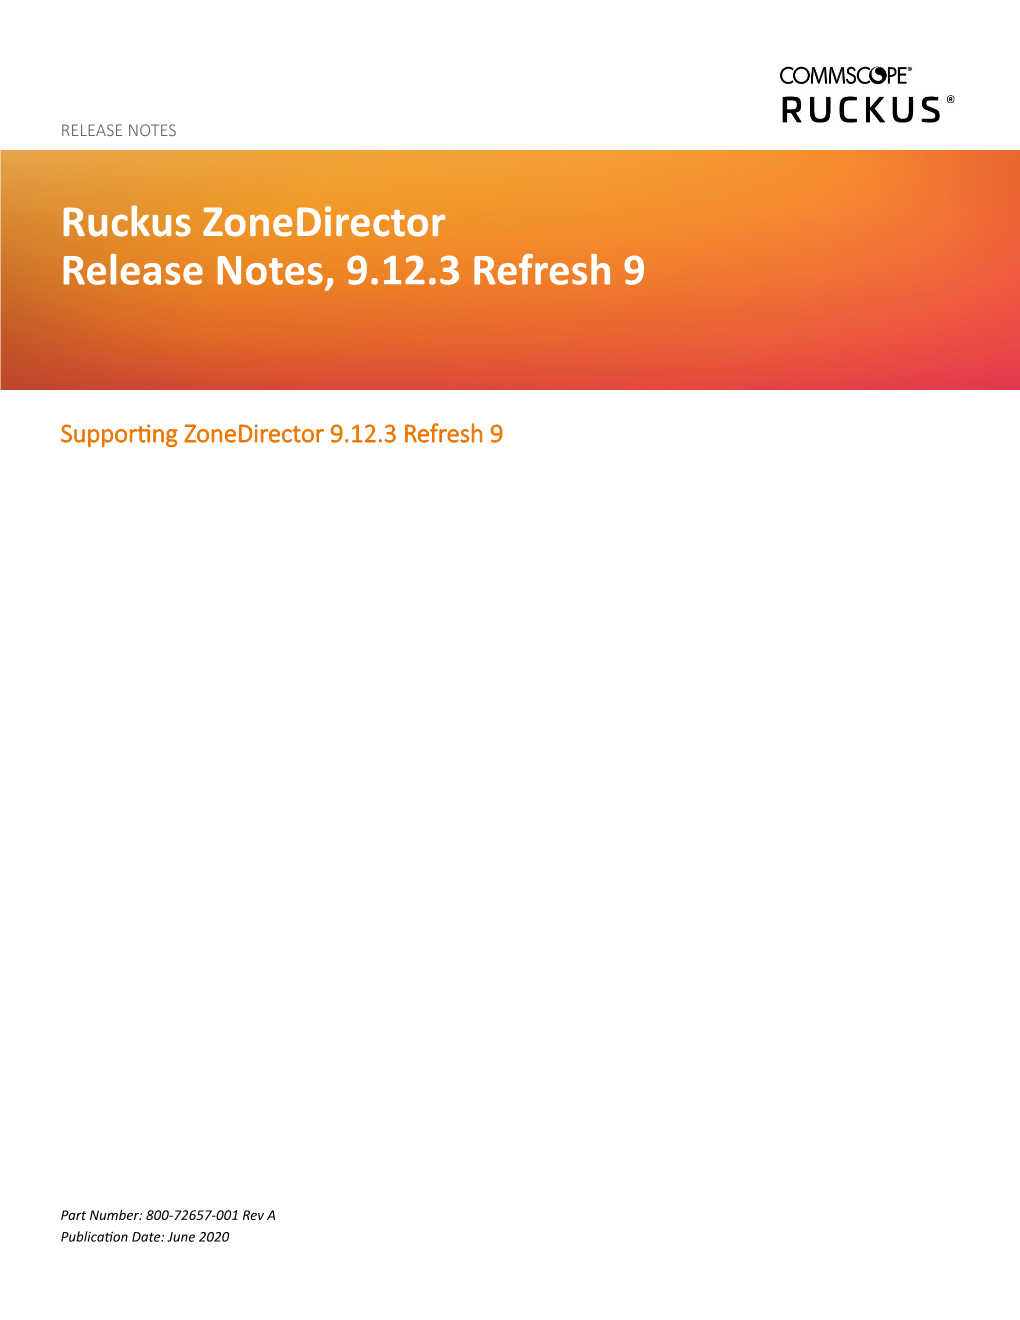 Ruckus Zonedirector Release Notes, 9.12.3 Refresh 9